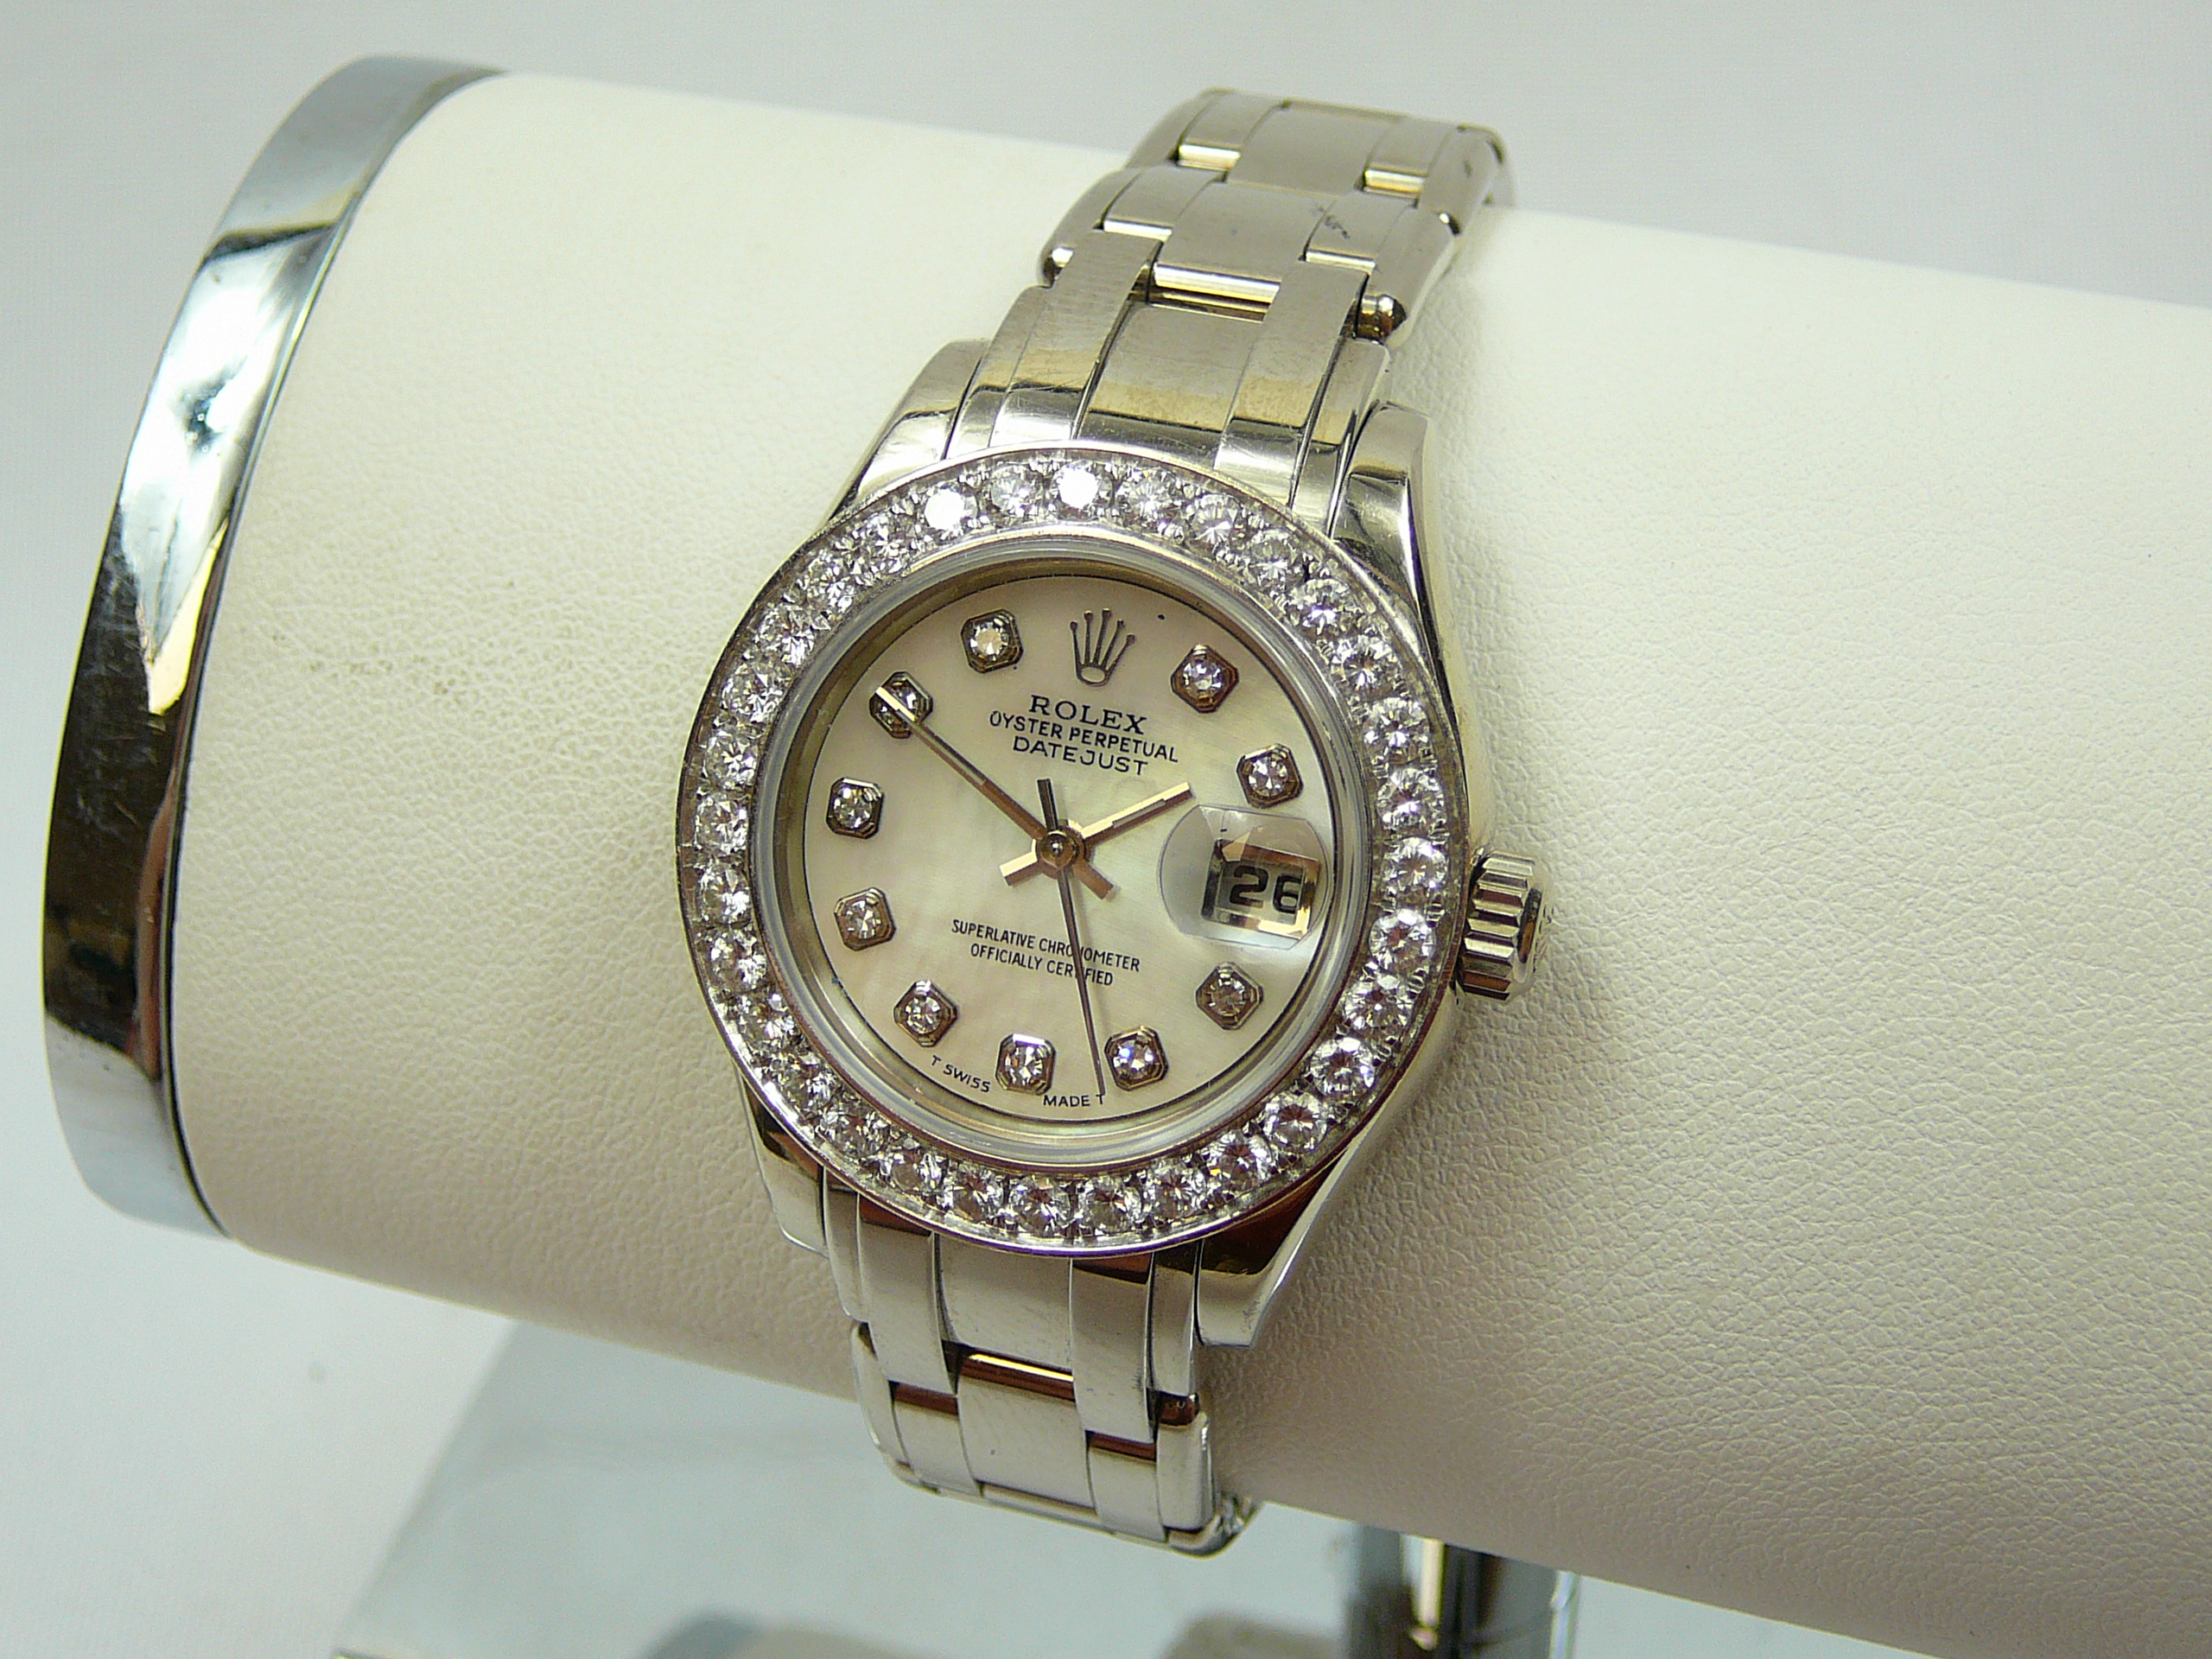 Ladies Gold Rolex Wrist Watch - Image 2 of 10